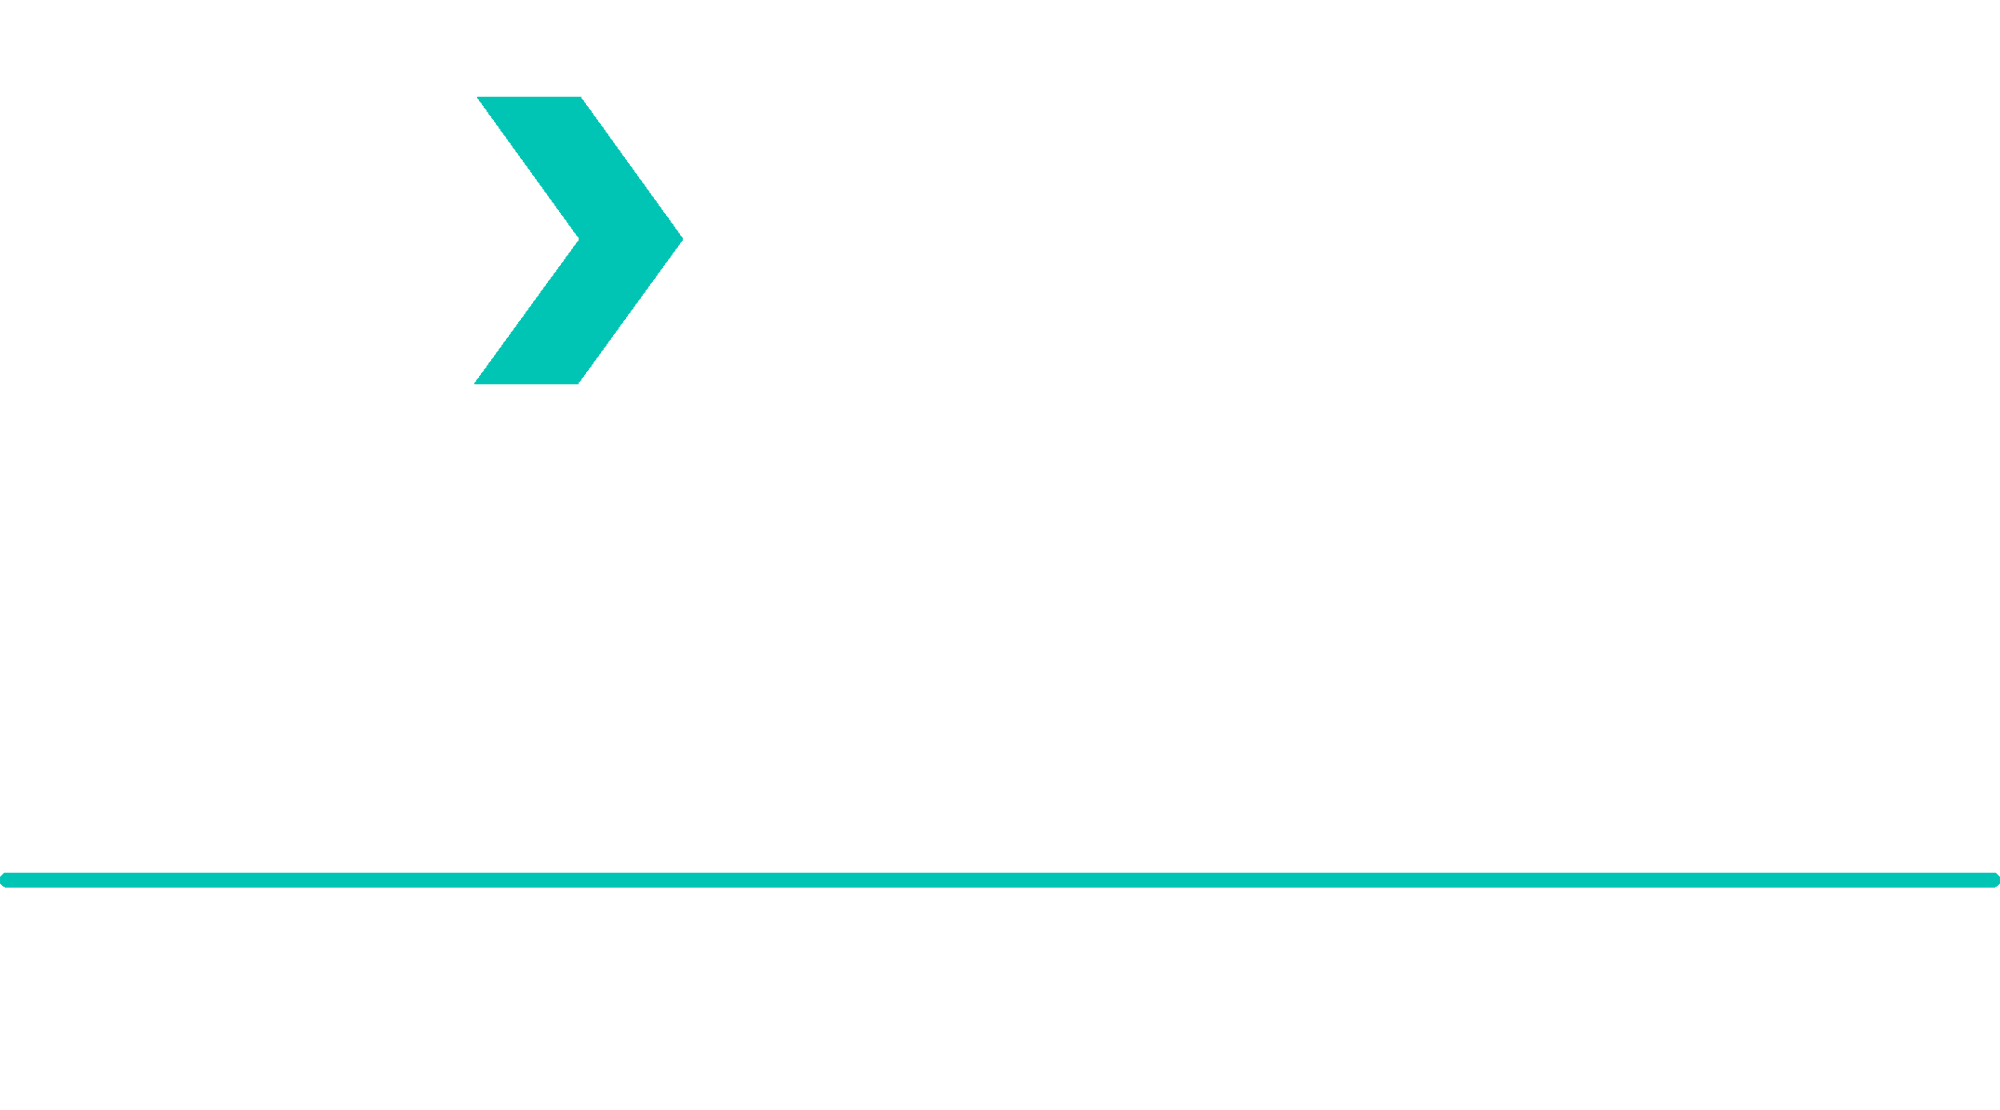 Lex Allan and Lex Allan Grove